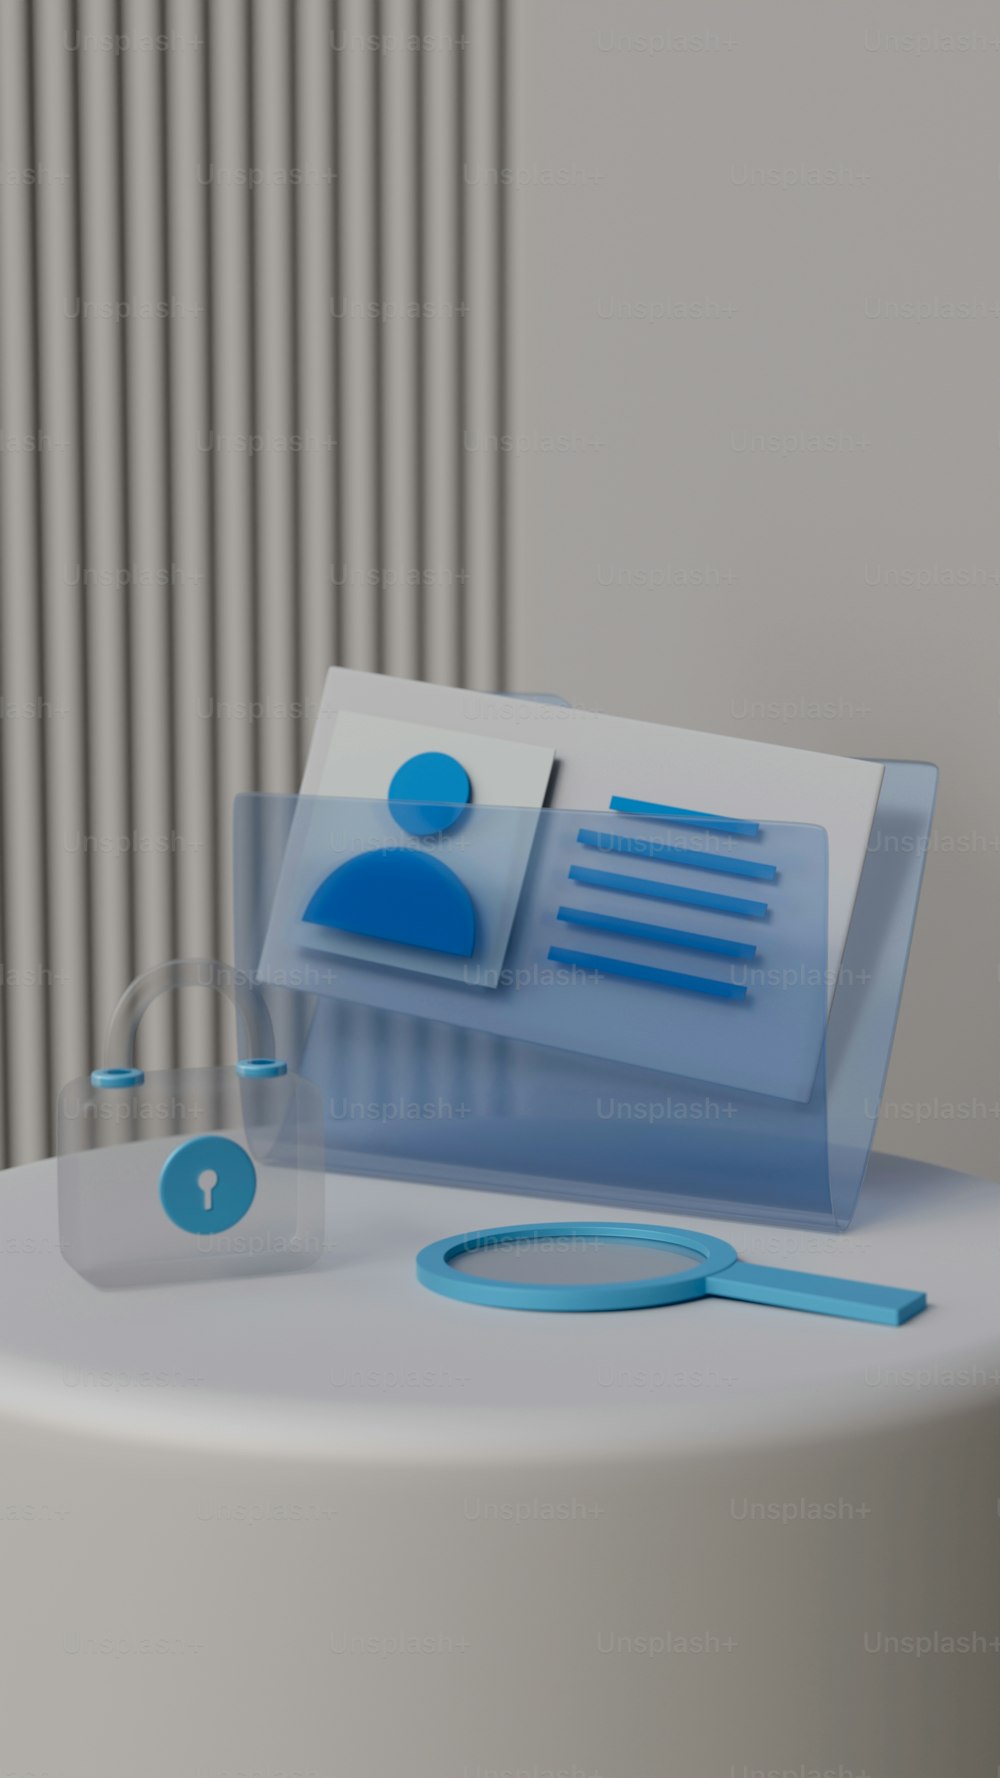 ein weißer Tisch mit einem blauen Objekt darauf